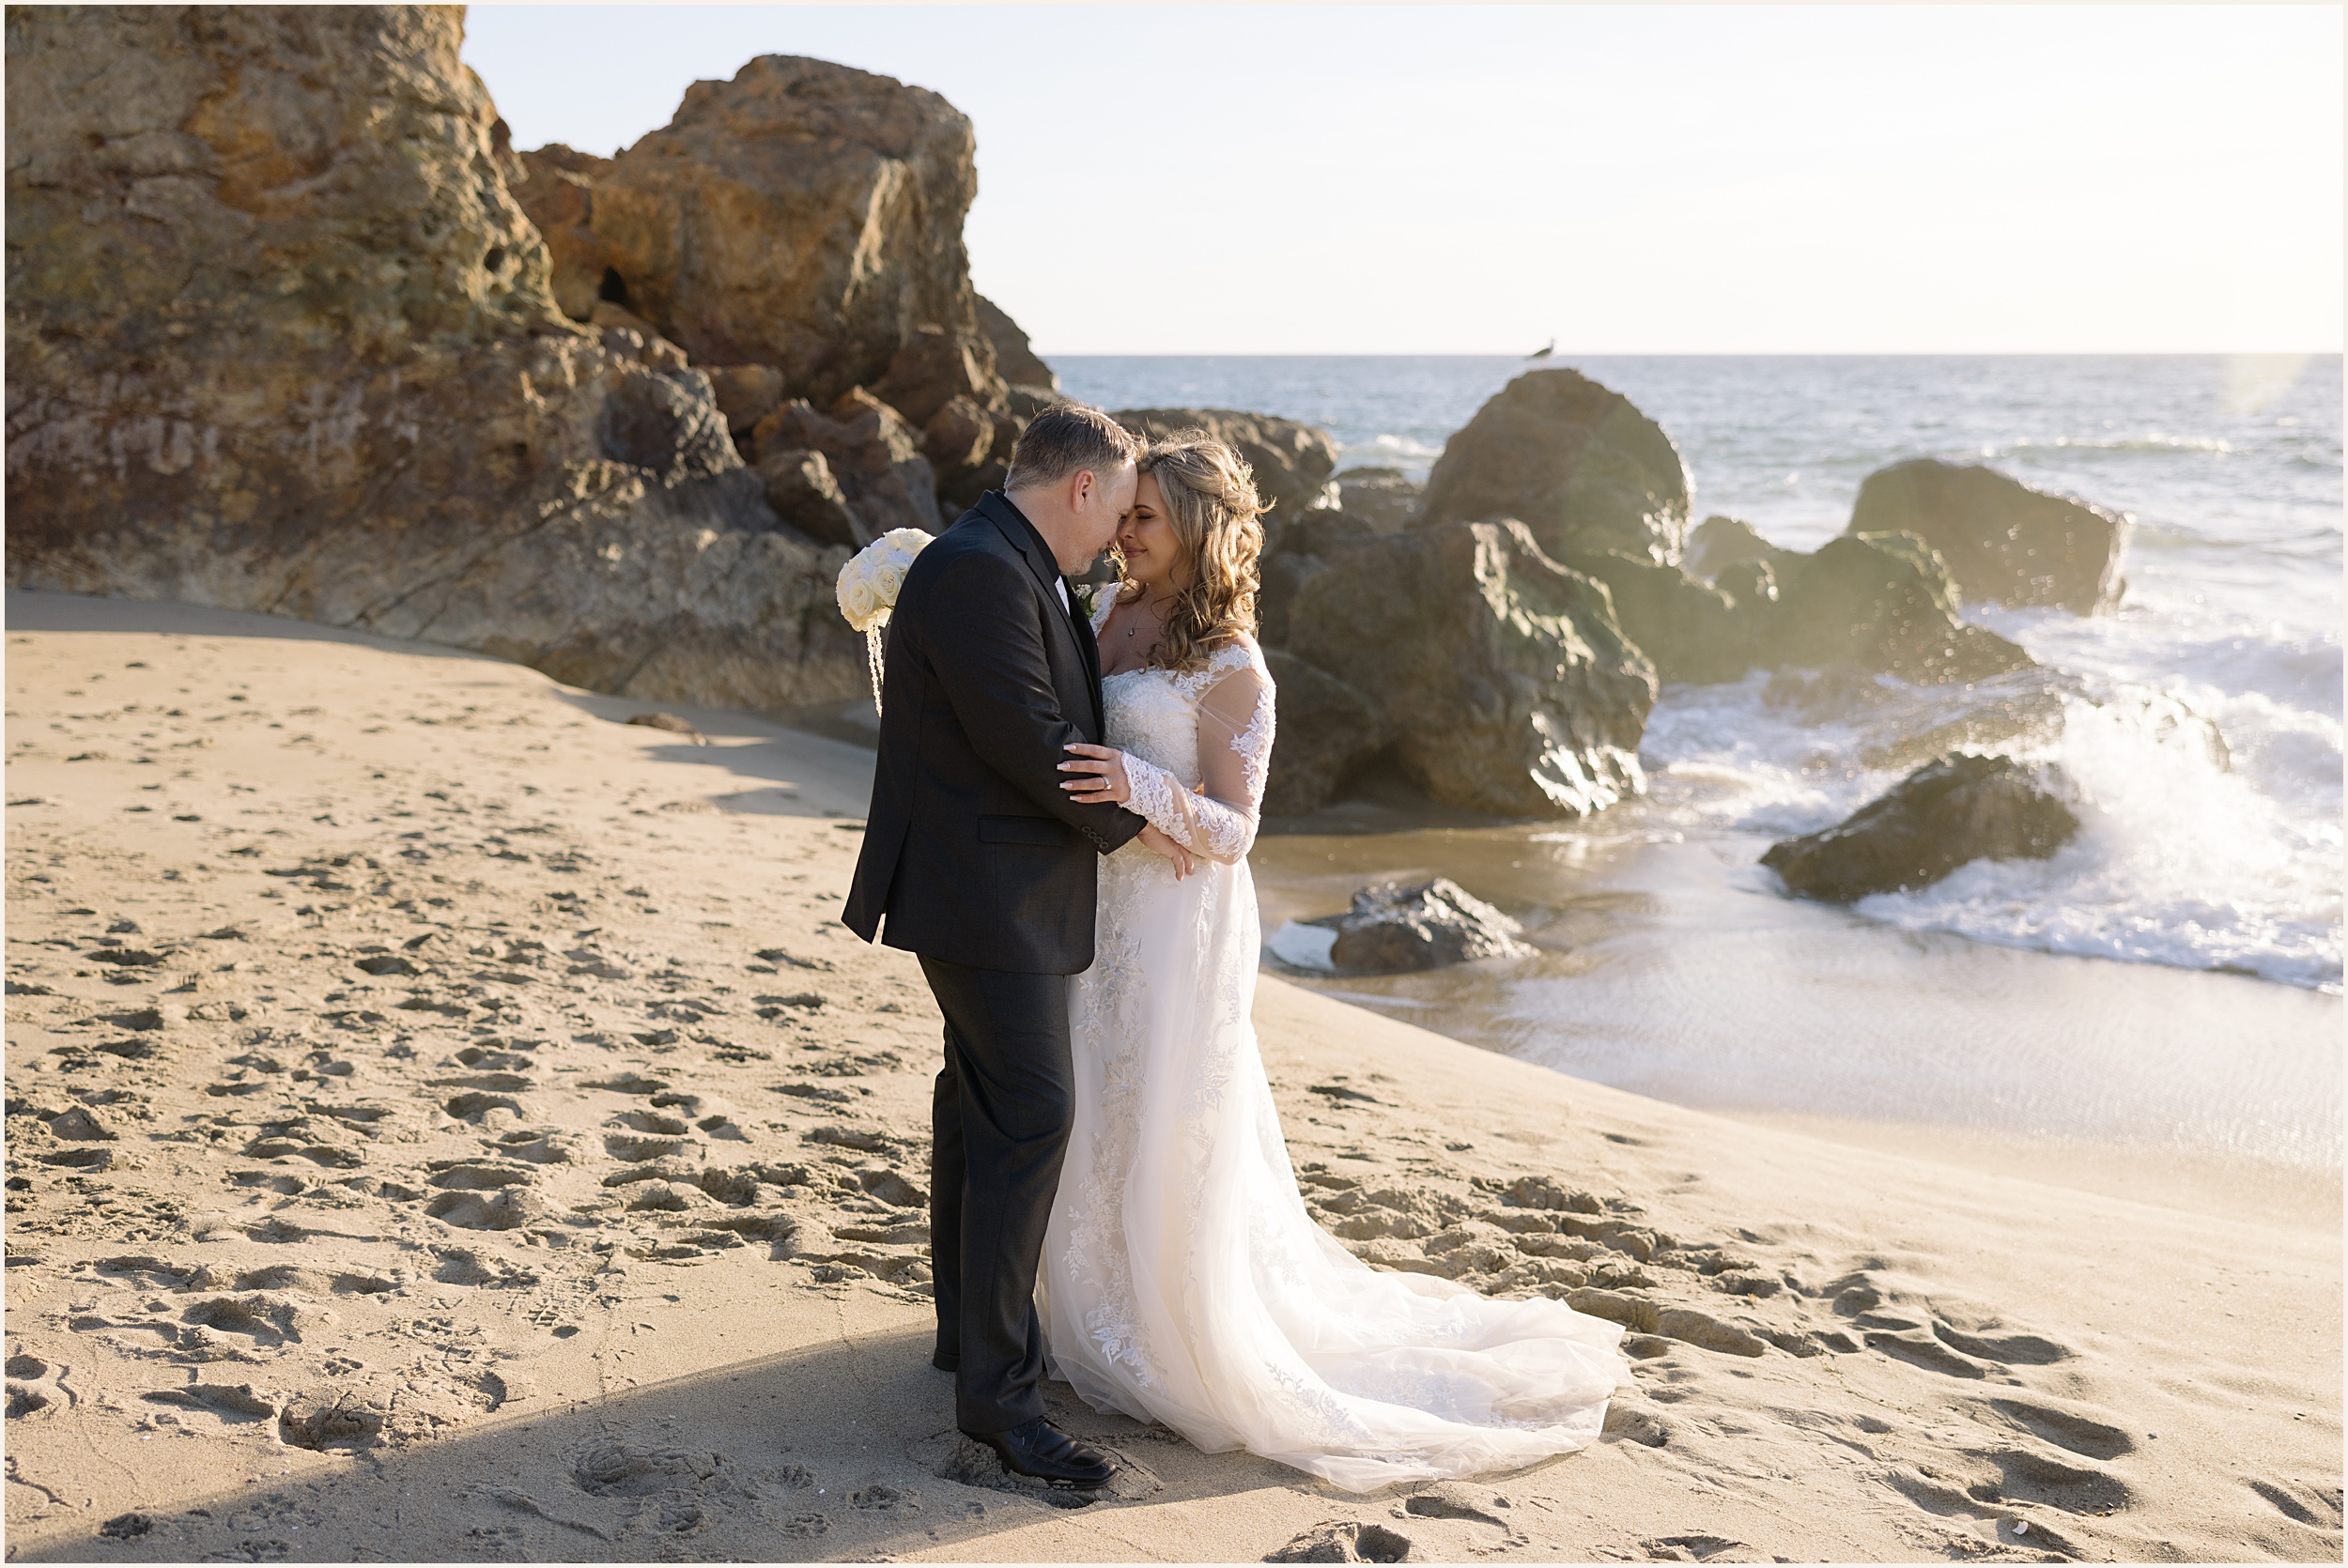 Briana-and-Matt-60 Winter Beach wedding in Malibu, CA | Brianna & Matt